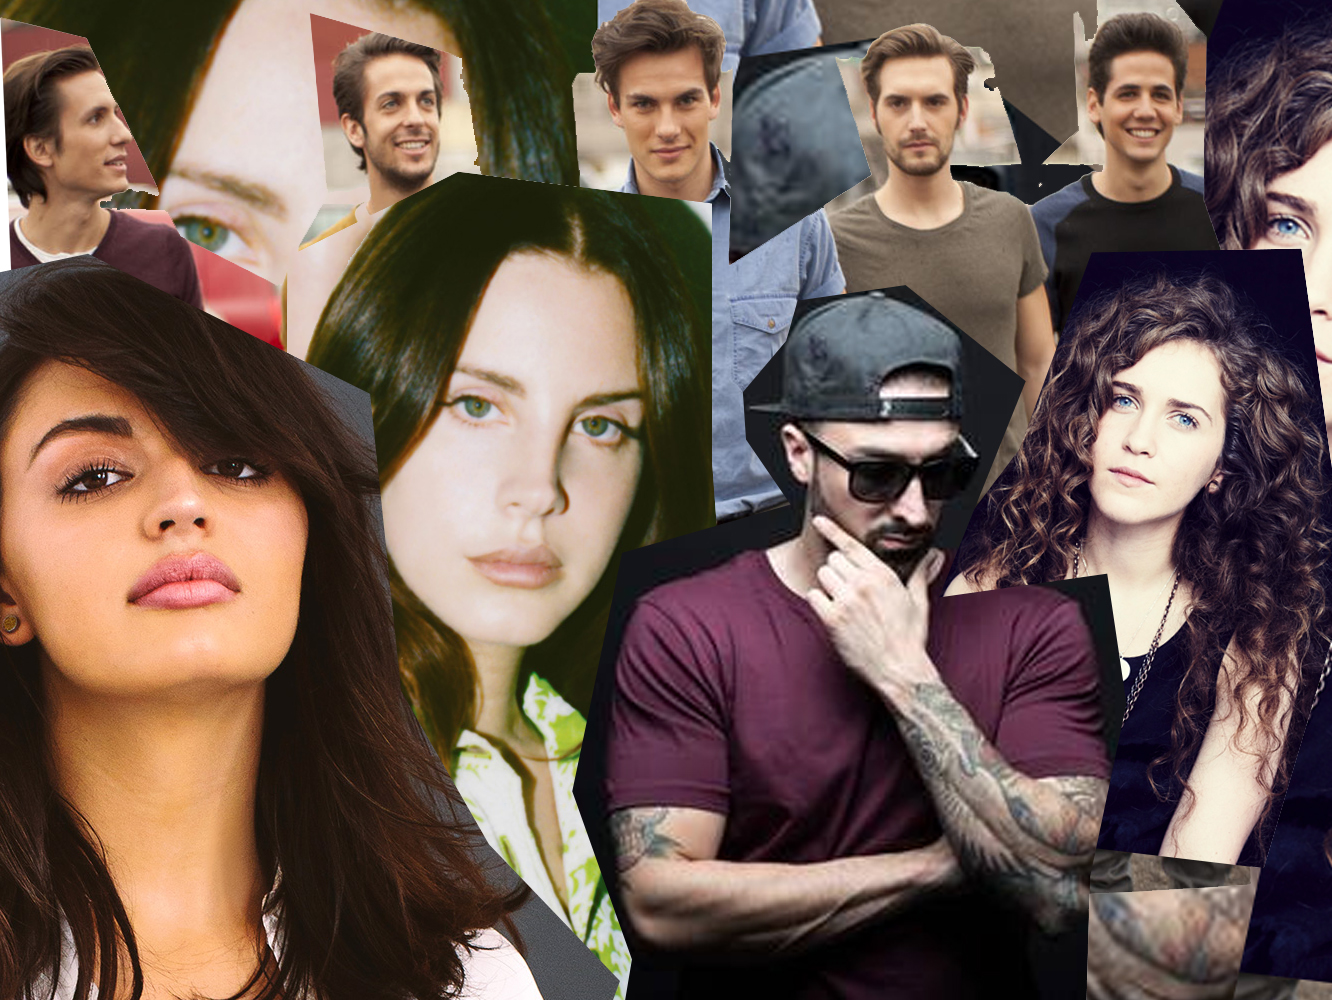  Music Fridays | Lo nuevo de Lana Del Rey, Sergio Dalma, DVicio o Shania Twain